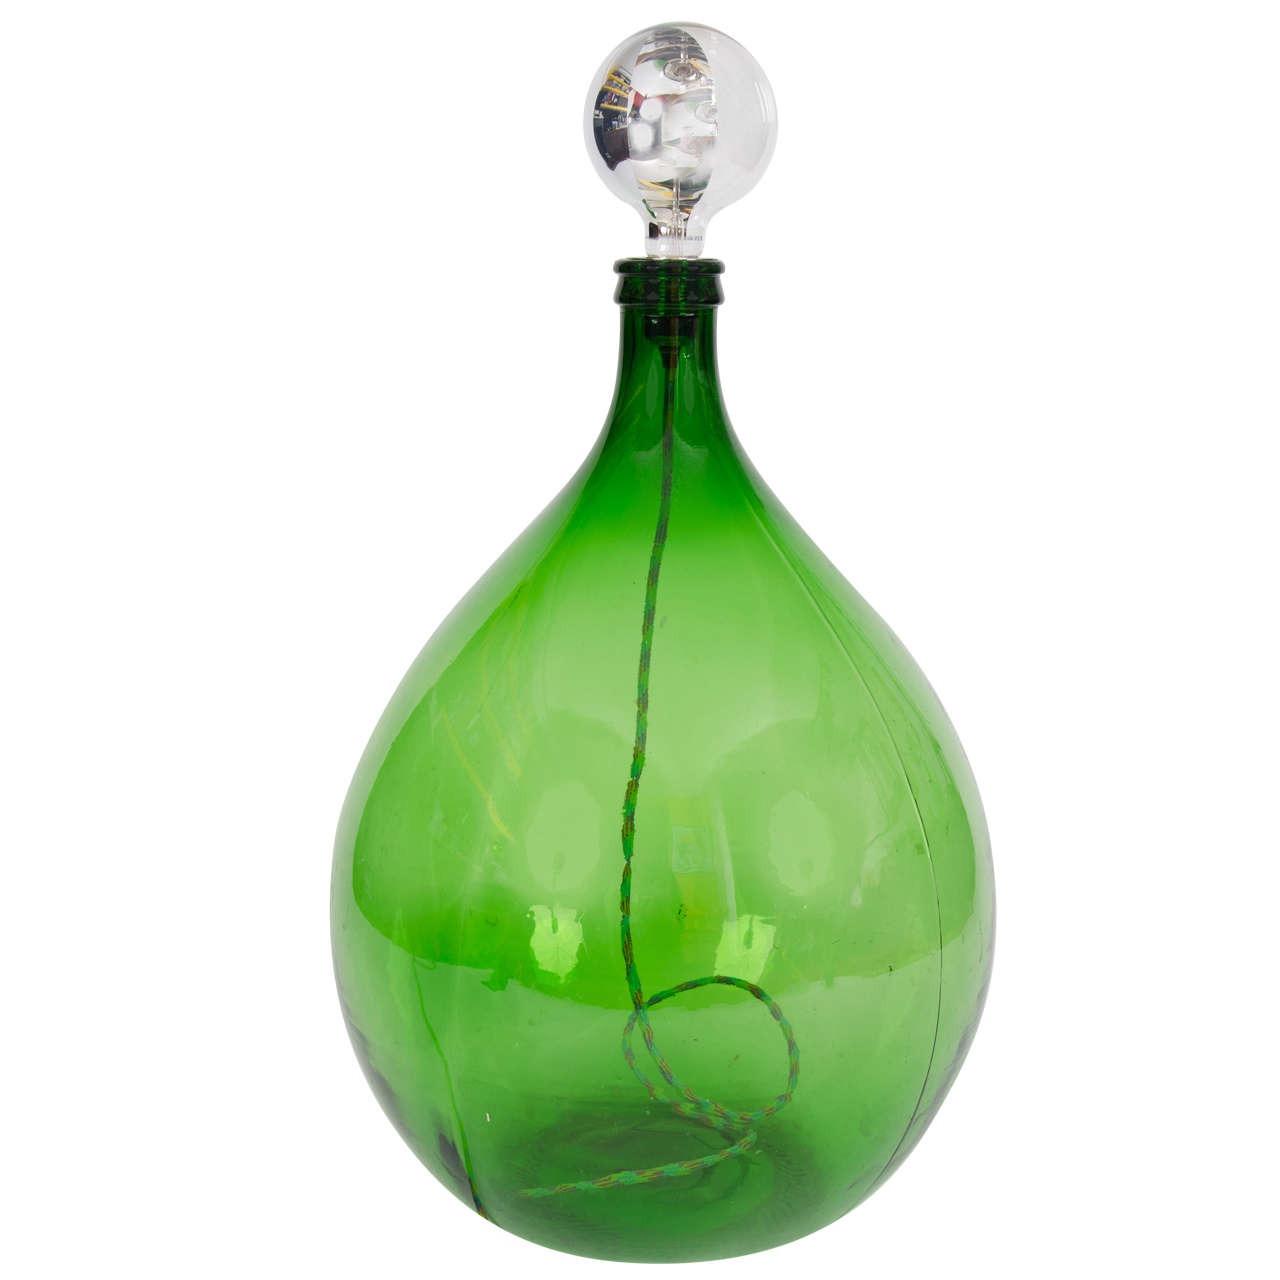 Vintage Bohemian/Rustic Handmade Green Demijohn Glass Bottle Table/Floor Lamp For Sale